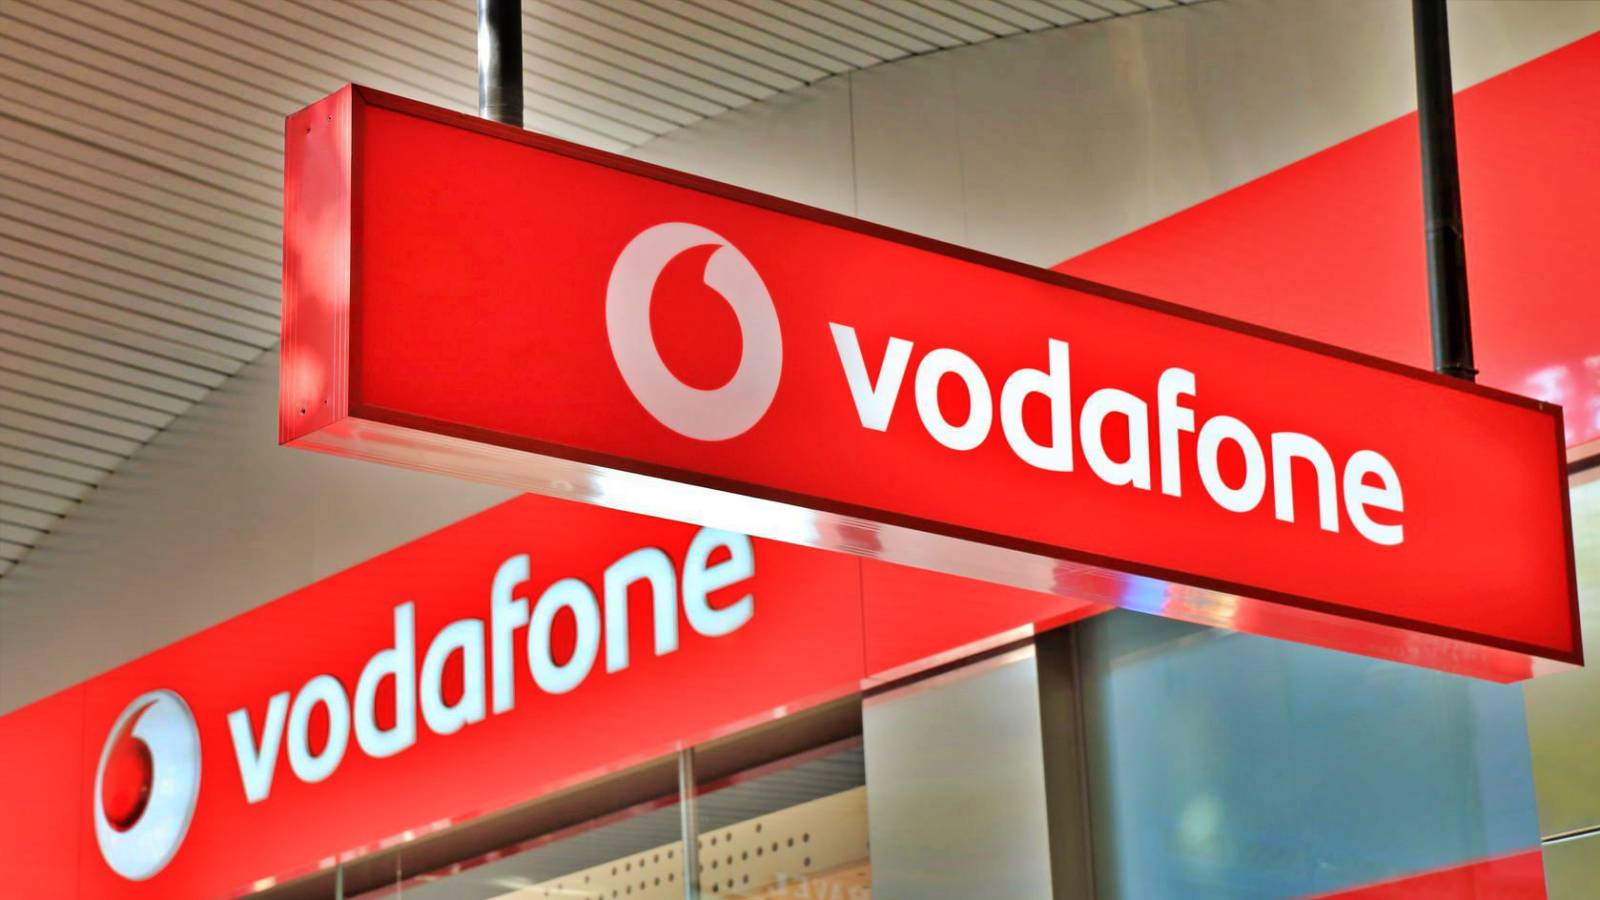 Les clients Vodafone sont informés GRATUITEMENT par l'opérateur pendant 3 mois